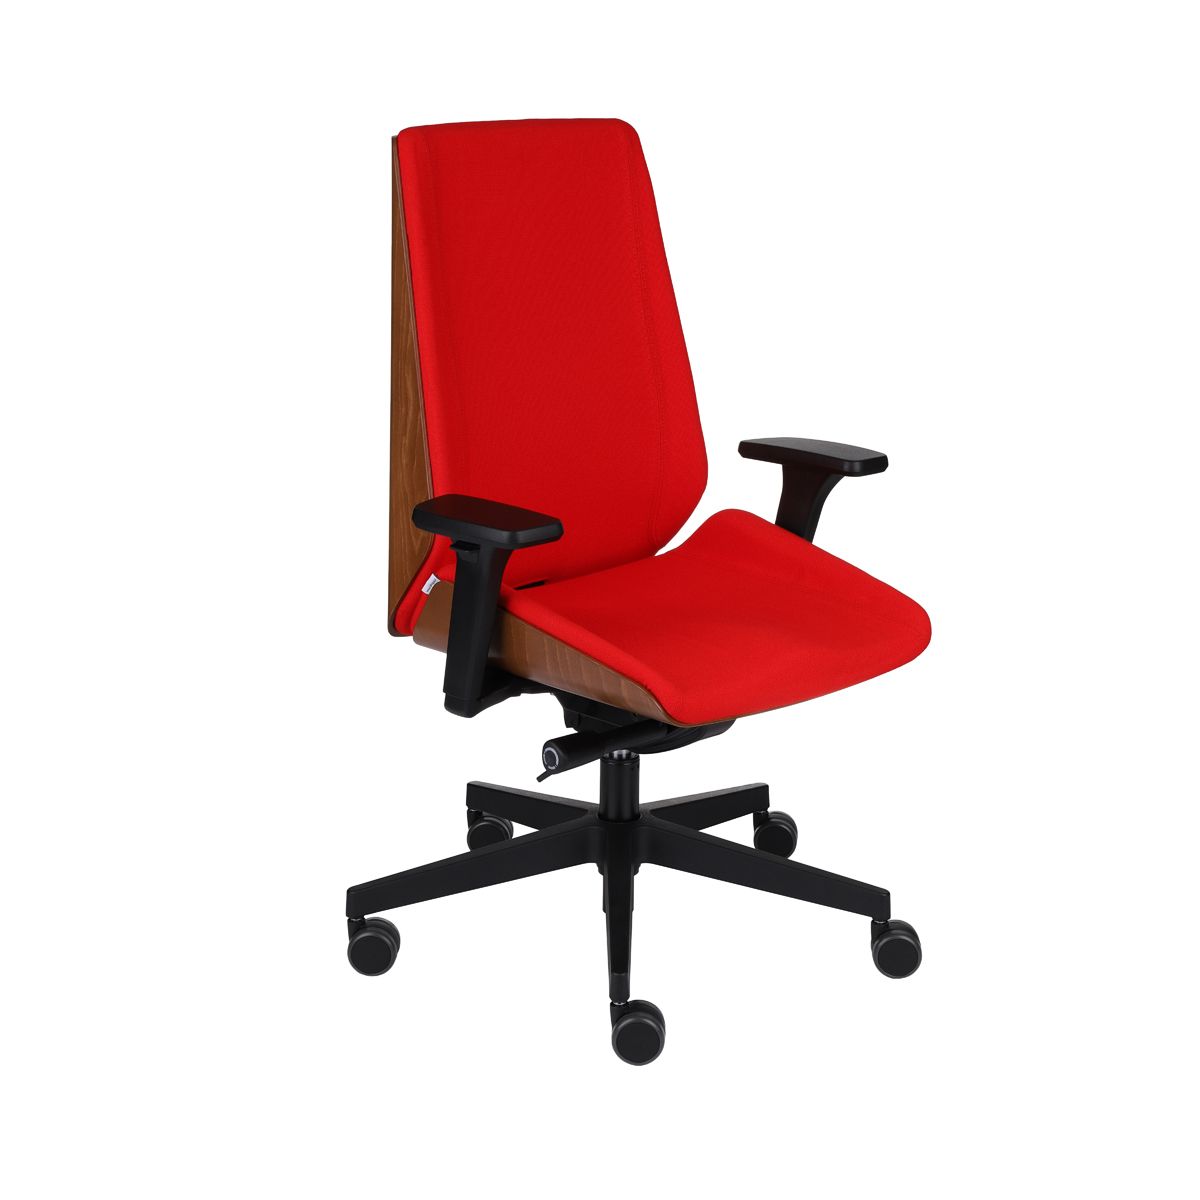 Kancelárska stolička s podrúčkami Munos Wood - červená (Fame 02) / svetlý orech / čierna - nabbi.sk